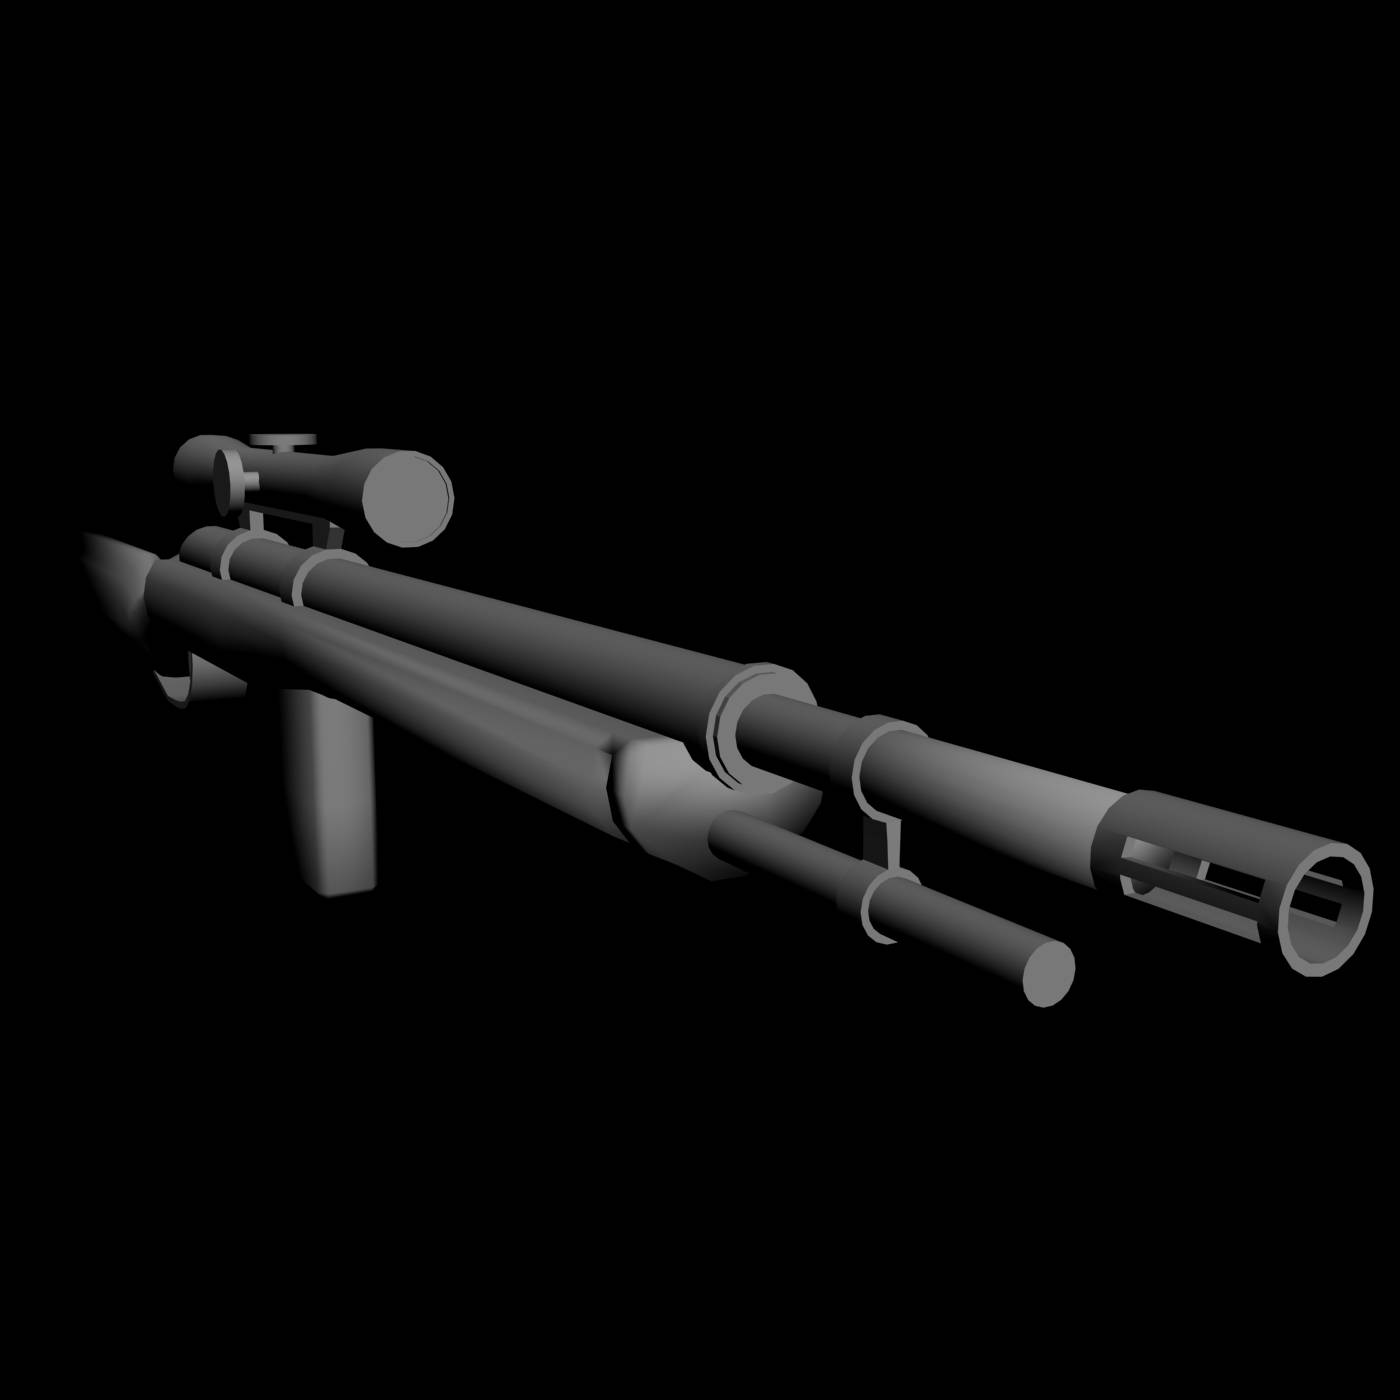 M-21 Sniper